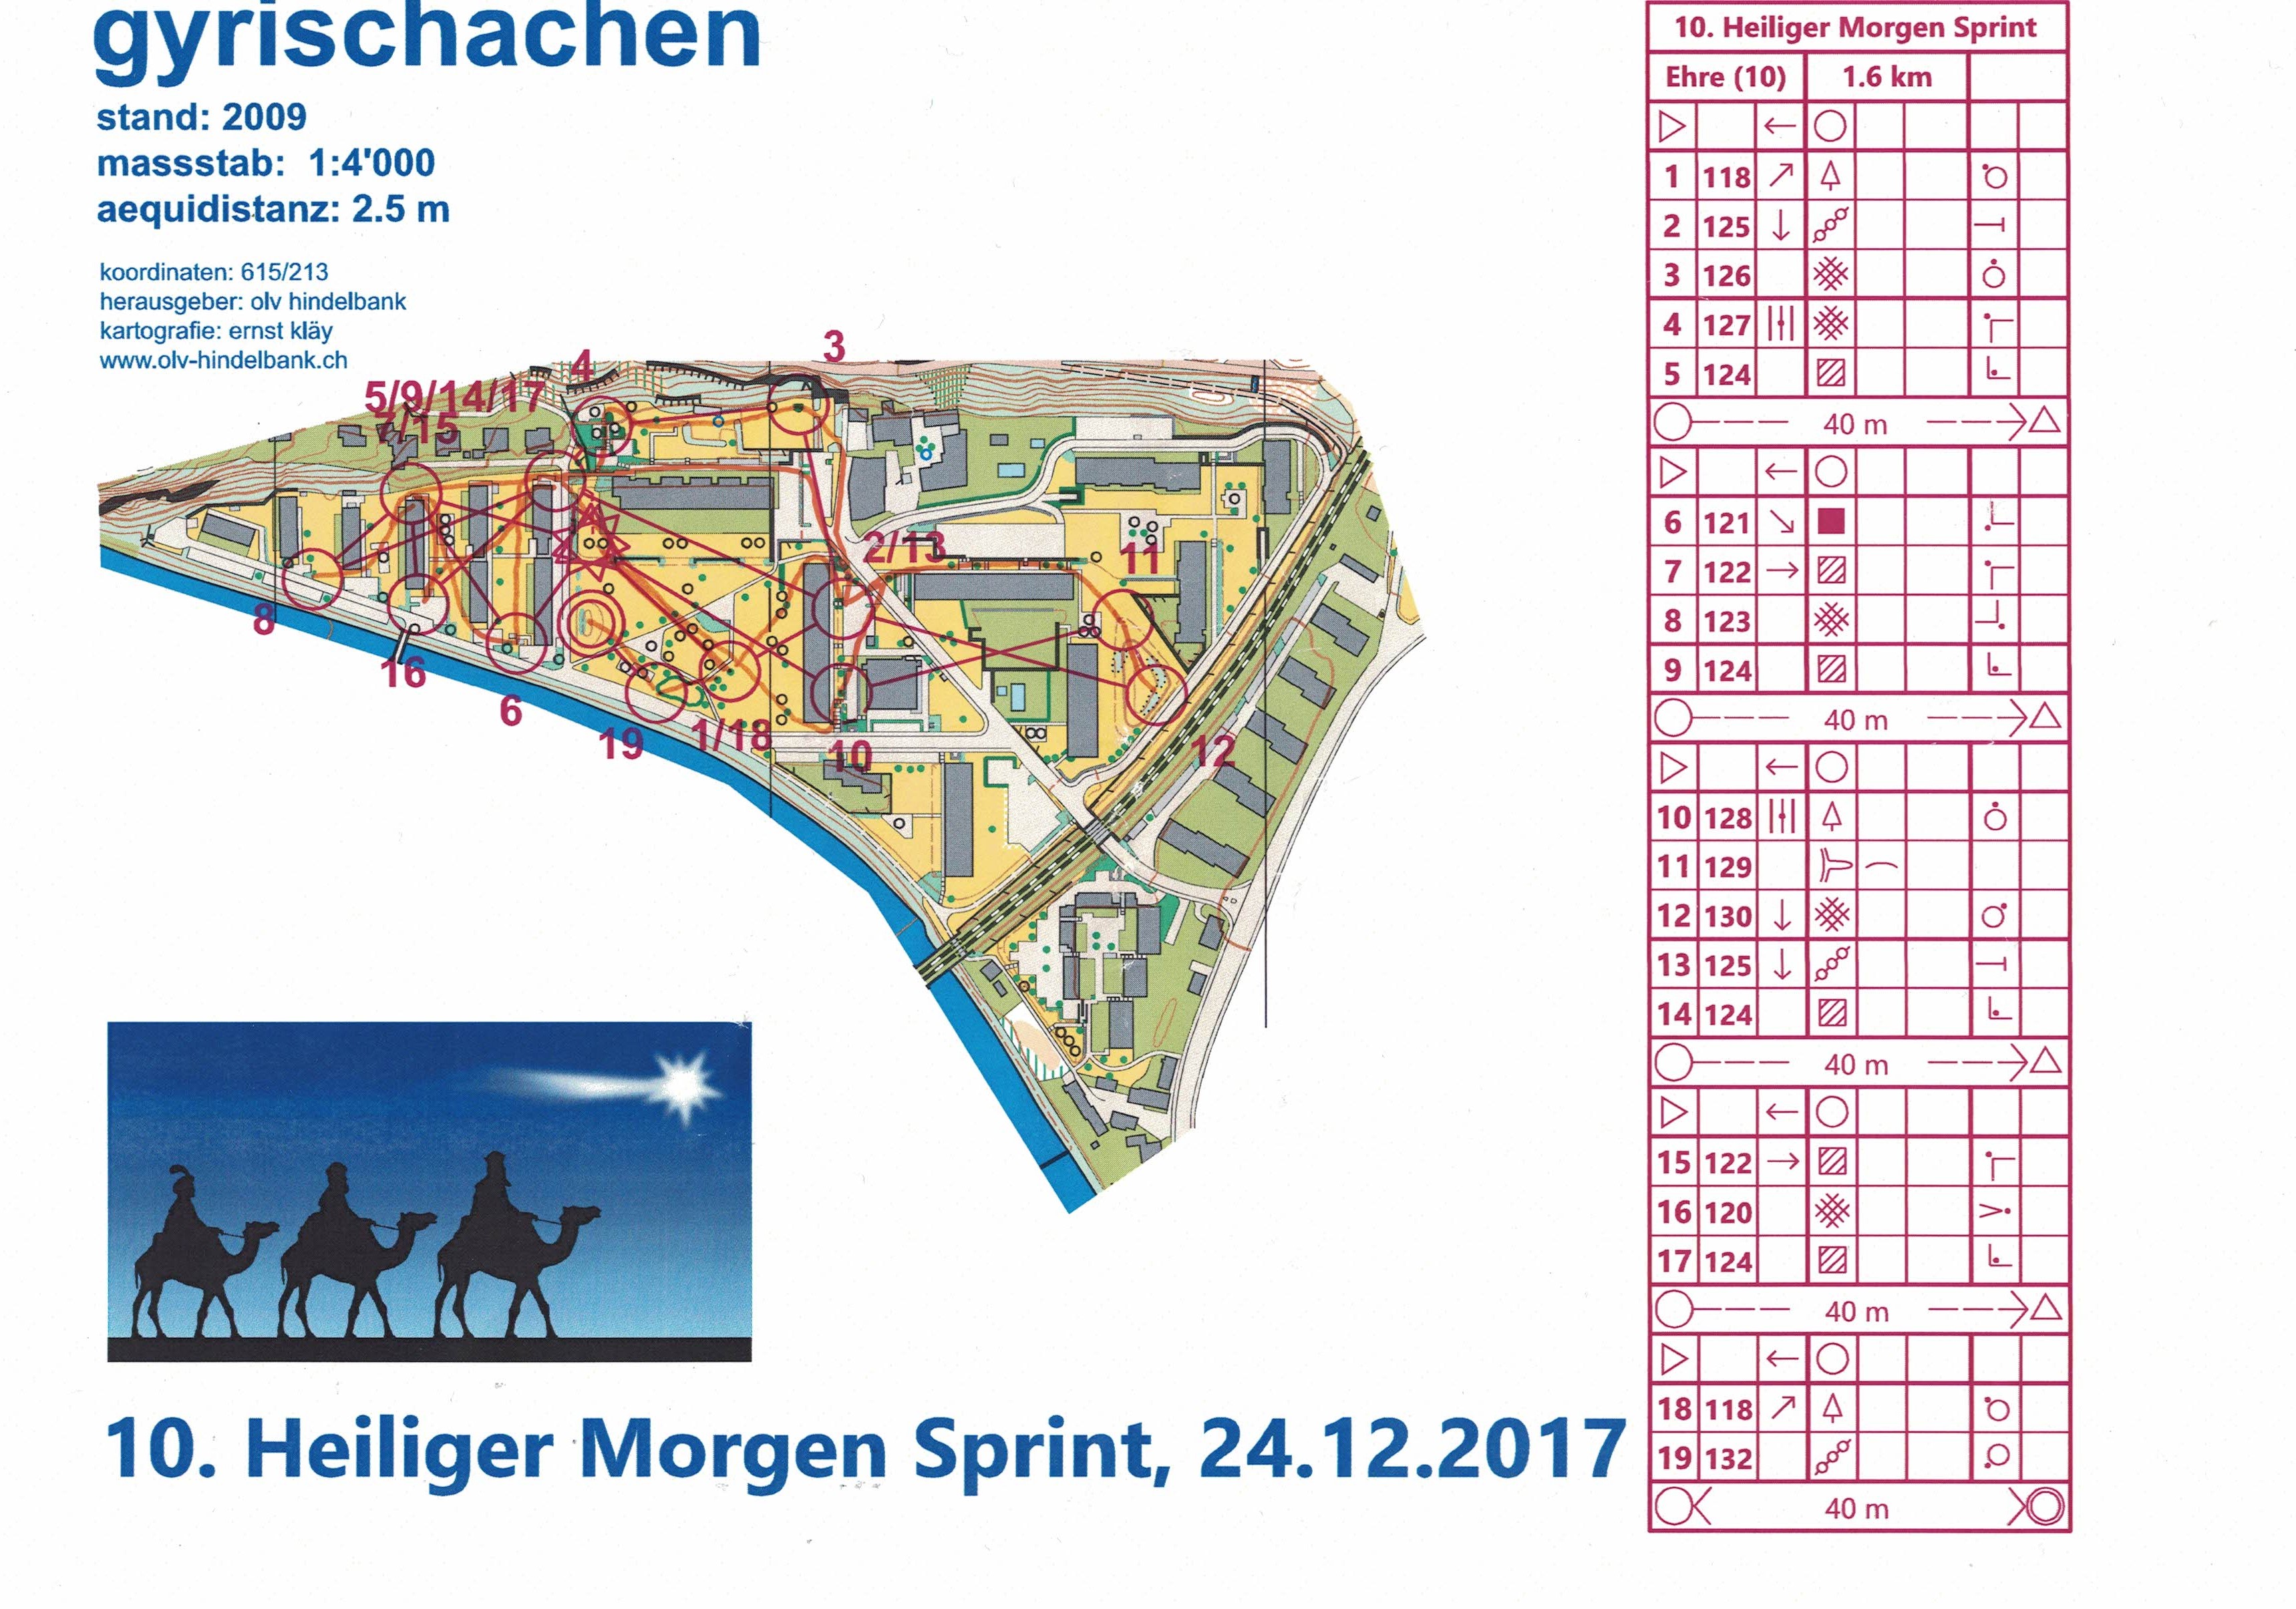 Heiliger Morgen Sprint - Part 2 (24/12/2017)